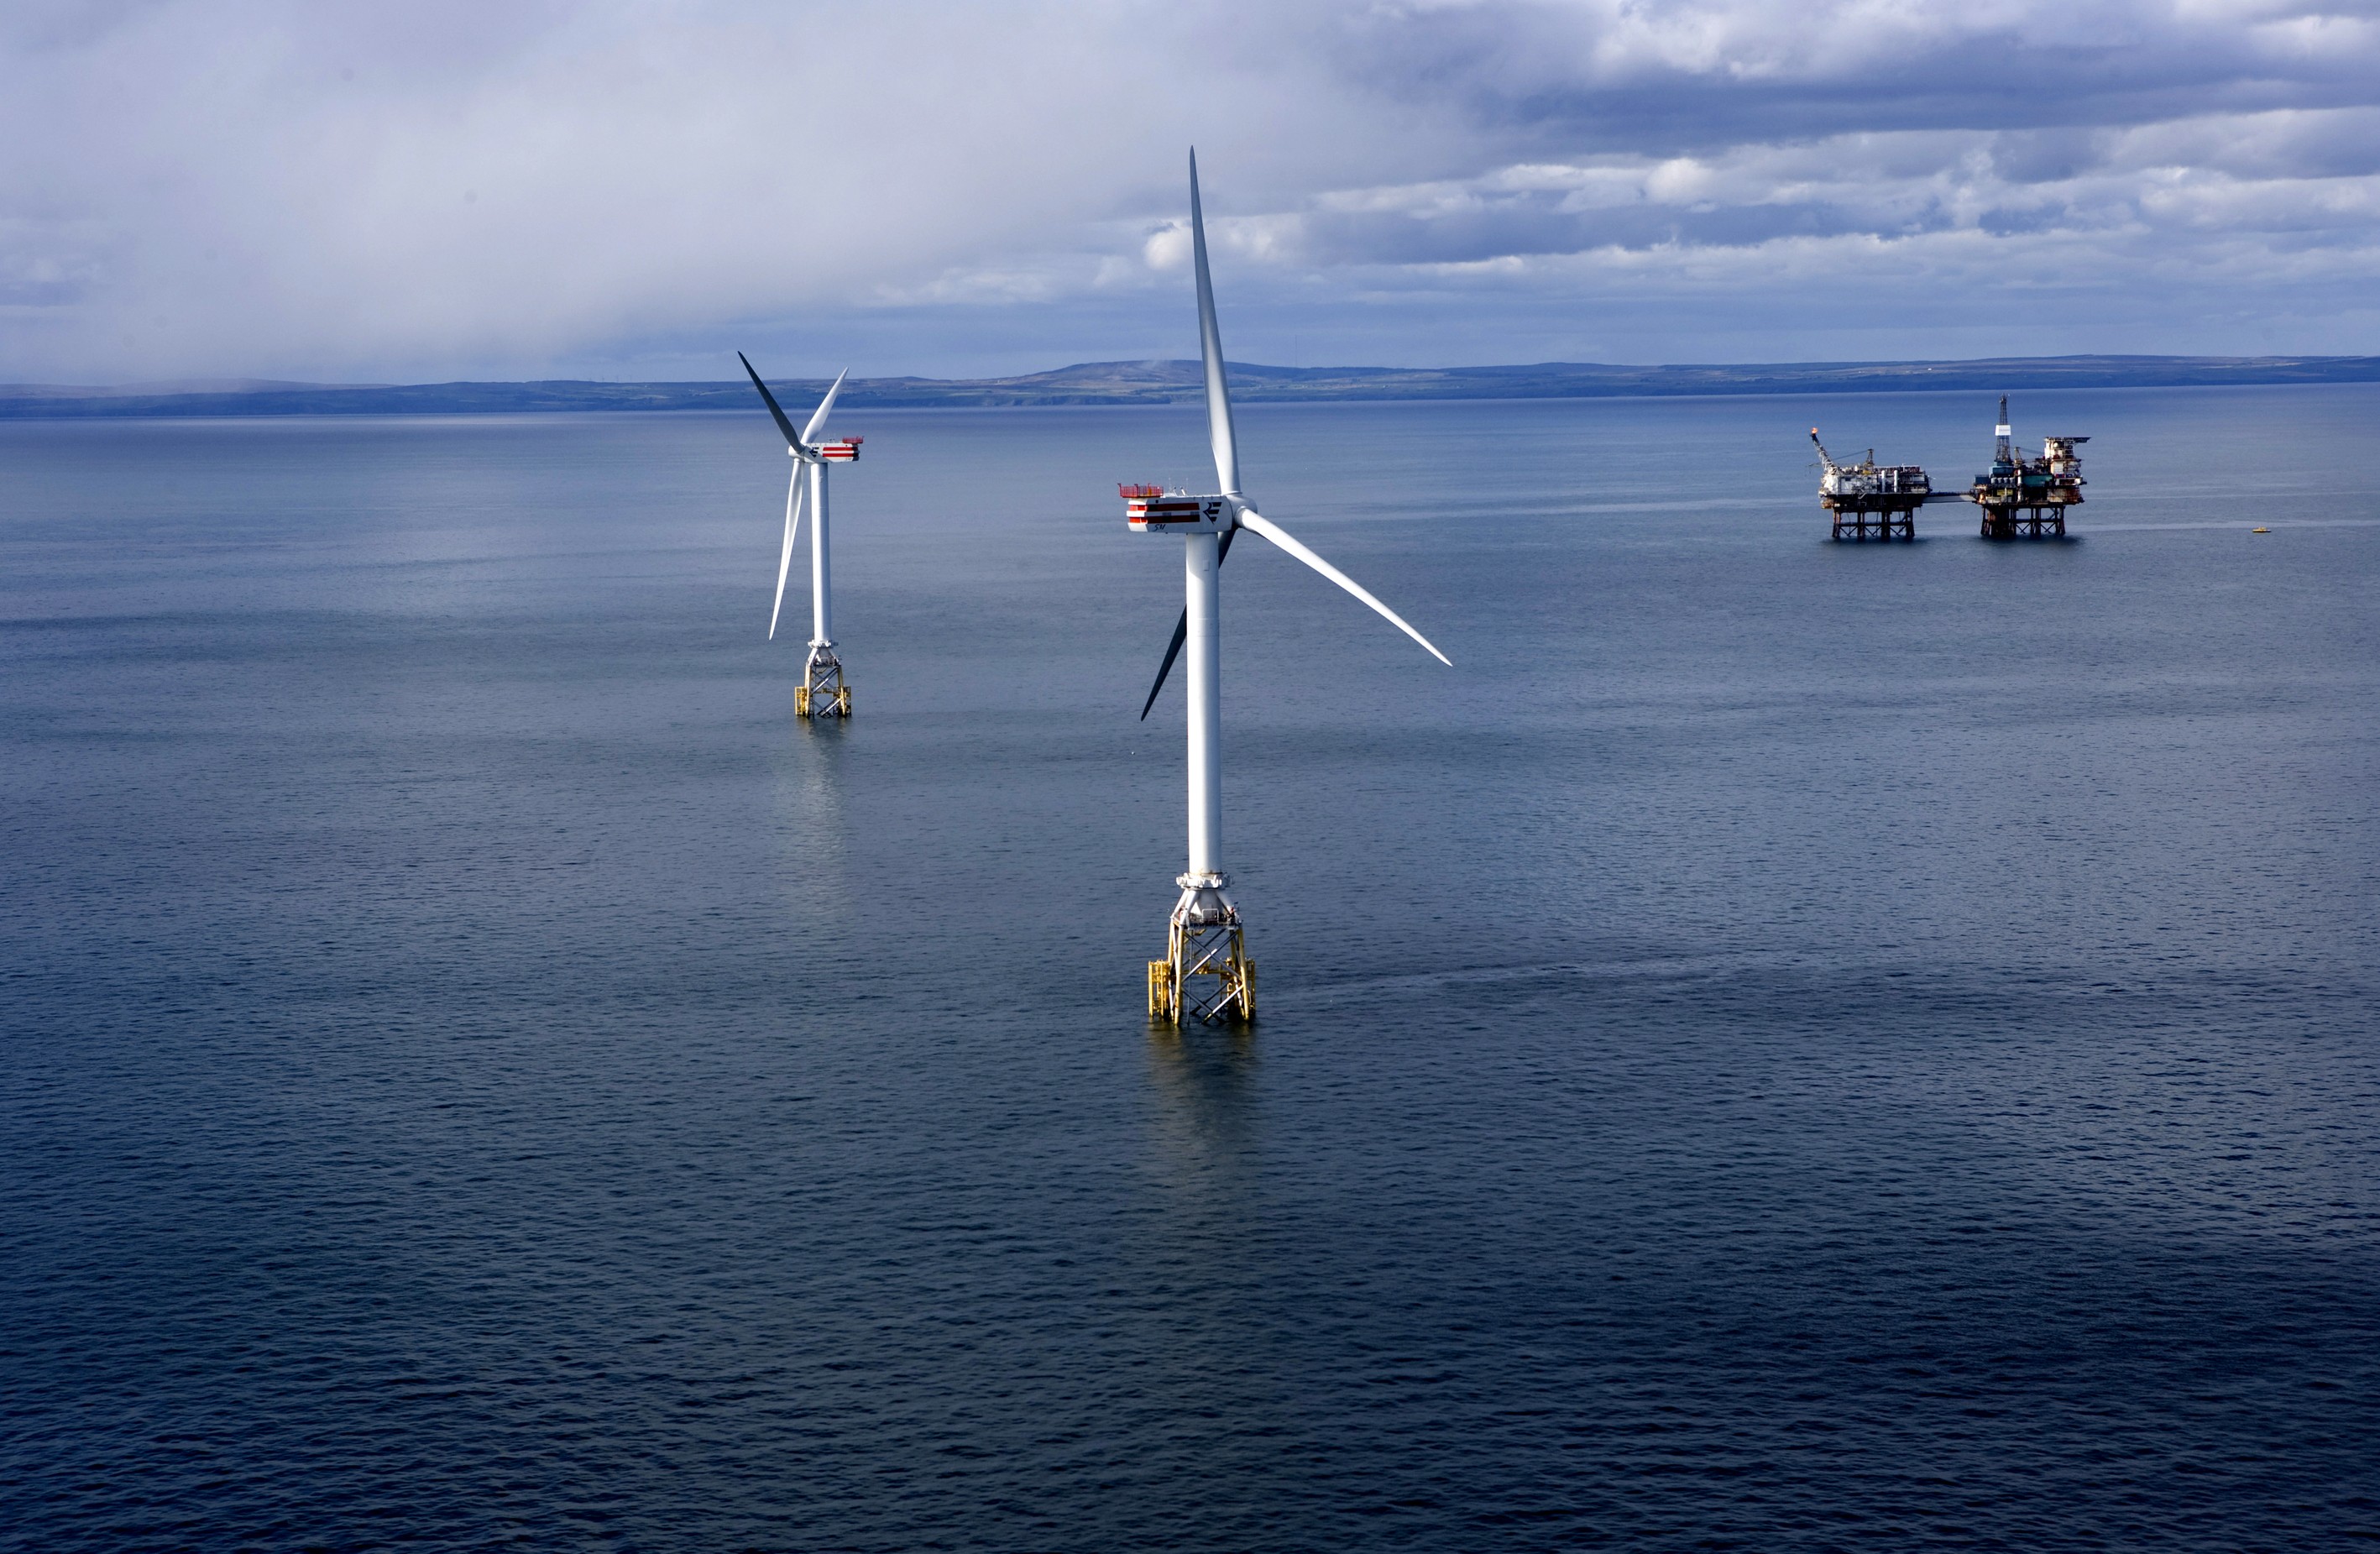 Scottish floating offshore wind port cluster 'could deliver £1.5bn boost'